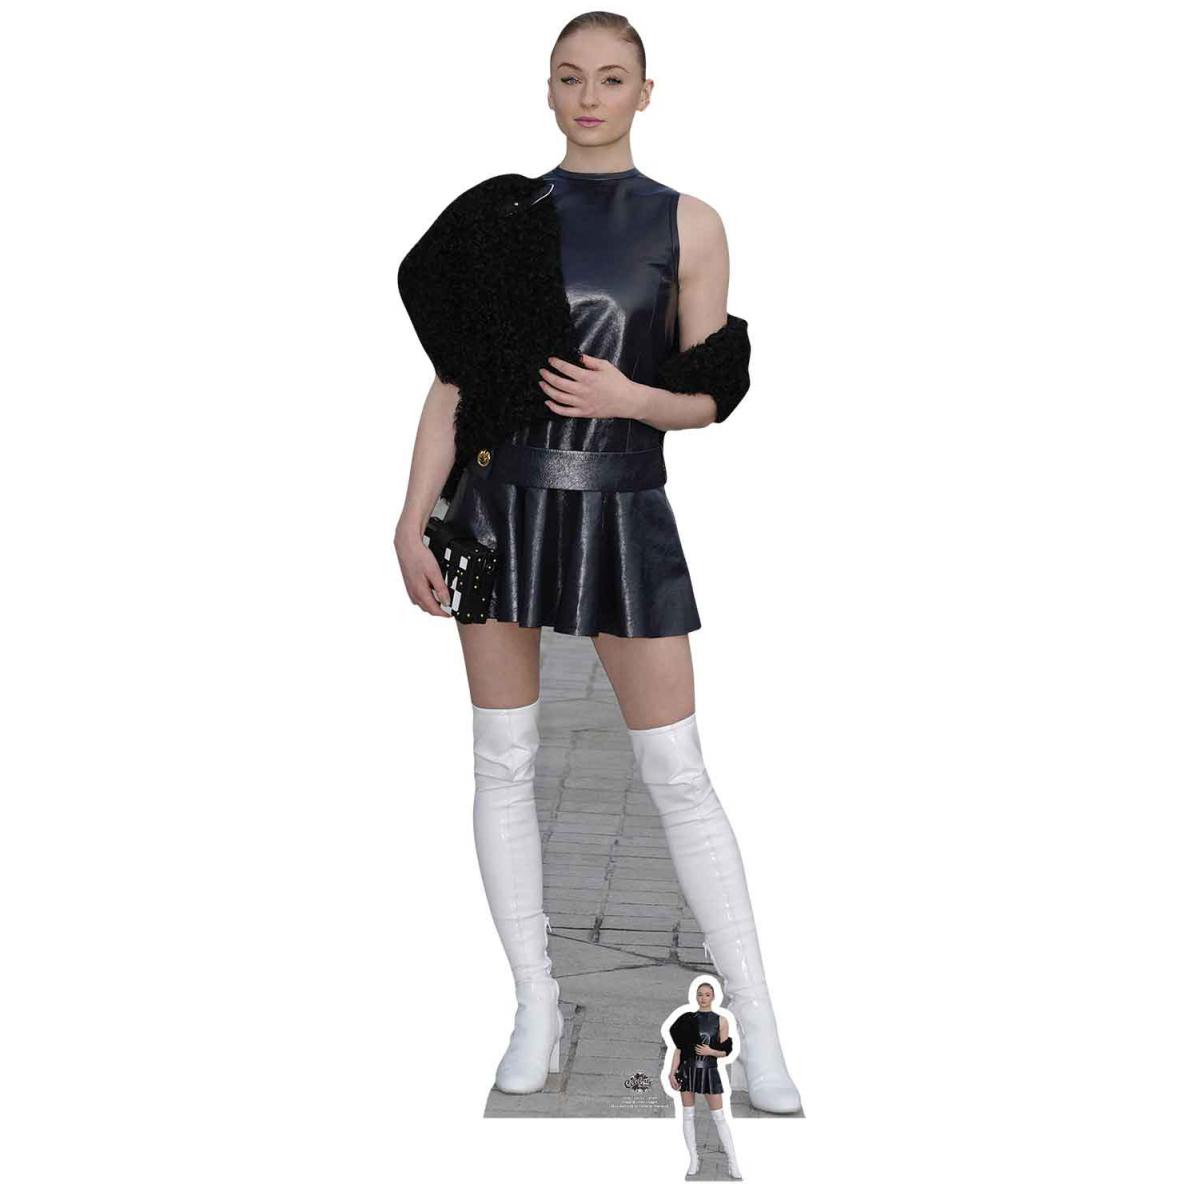 Star Cutouts - Figurine en carton taille reelle Sophie Turner Jupe courte noire et bottes blanches 178cm - Statues